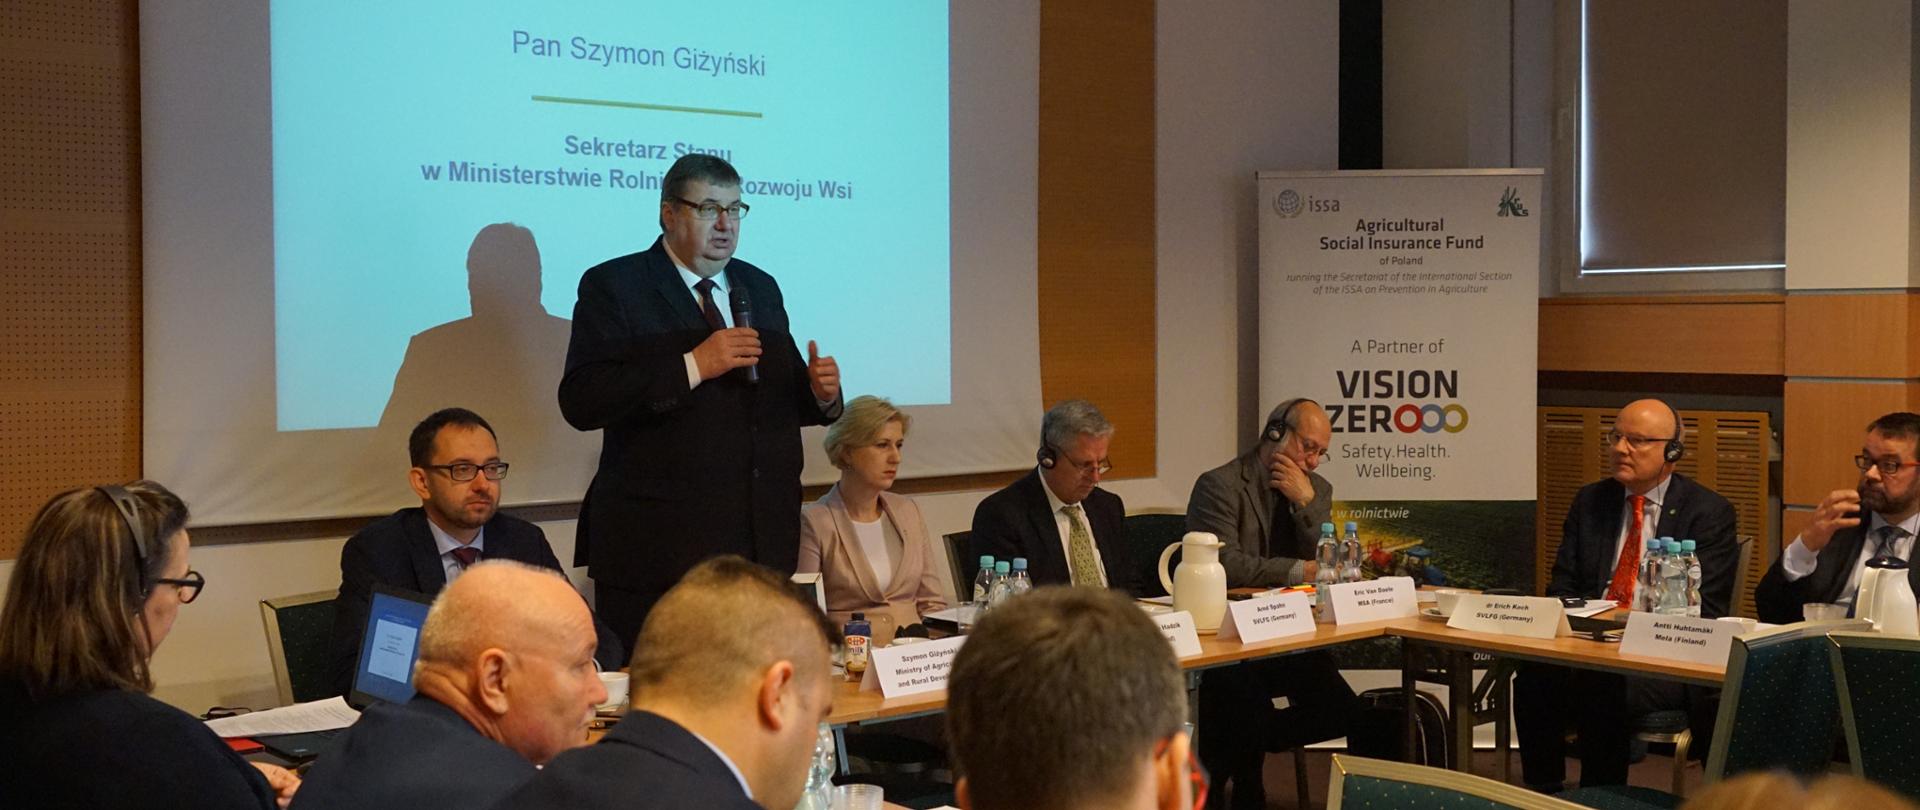 Sekretarz stanu Szymon Giżyński podczas wystąpienia